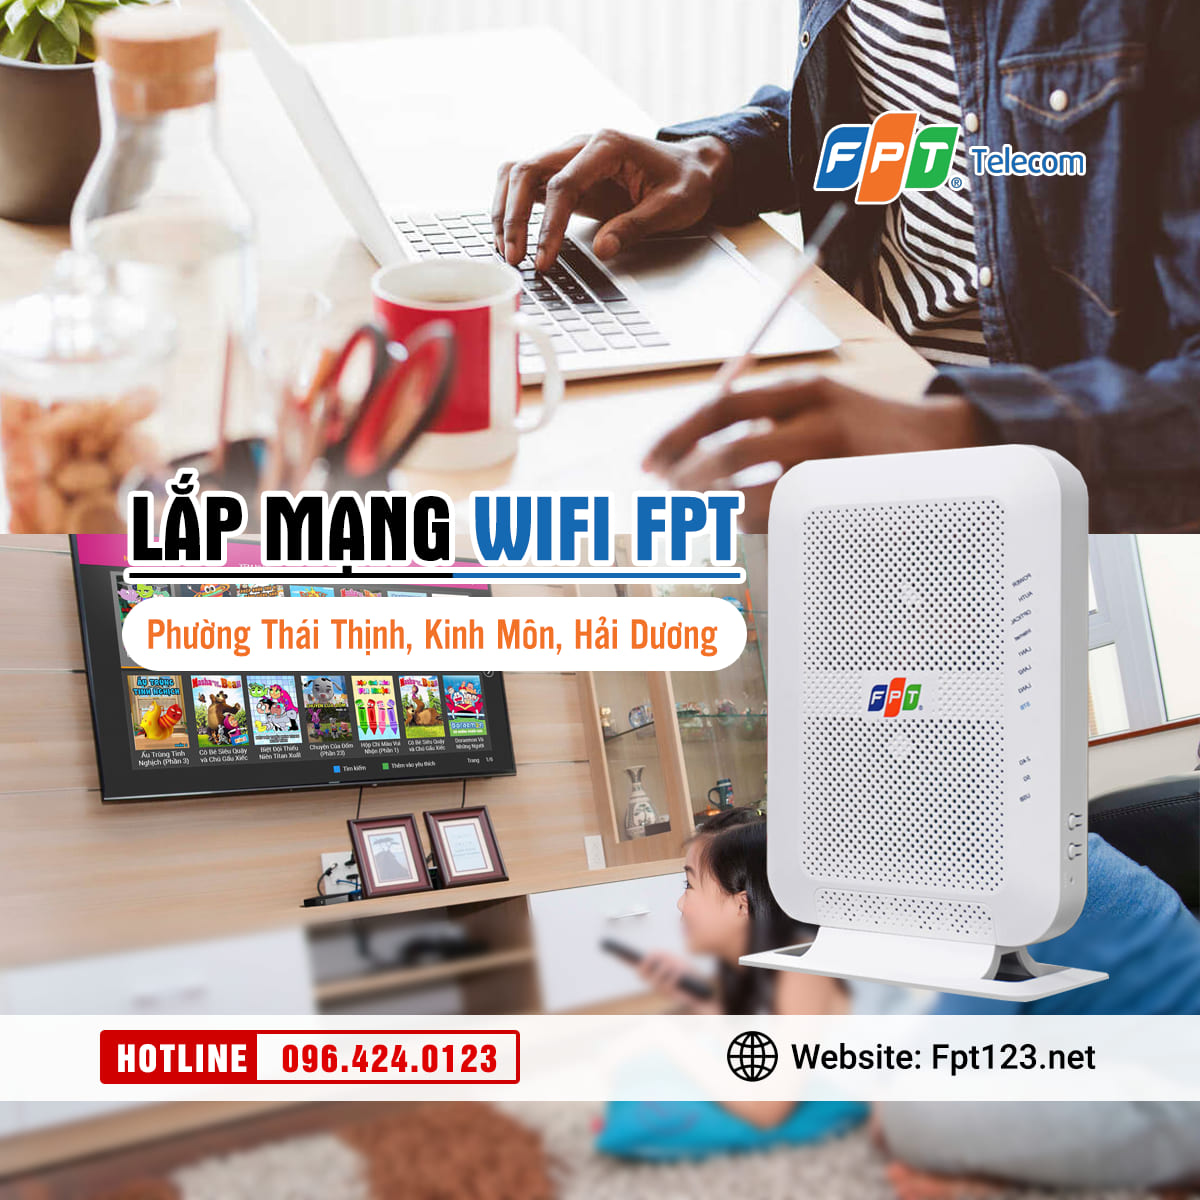 Lắp mạng wifi FPT phường Thái Thịnh, Kinh Môn, Hải Dương